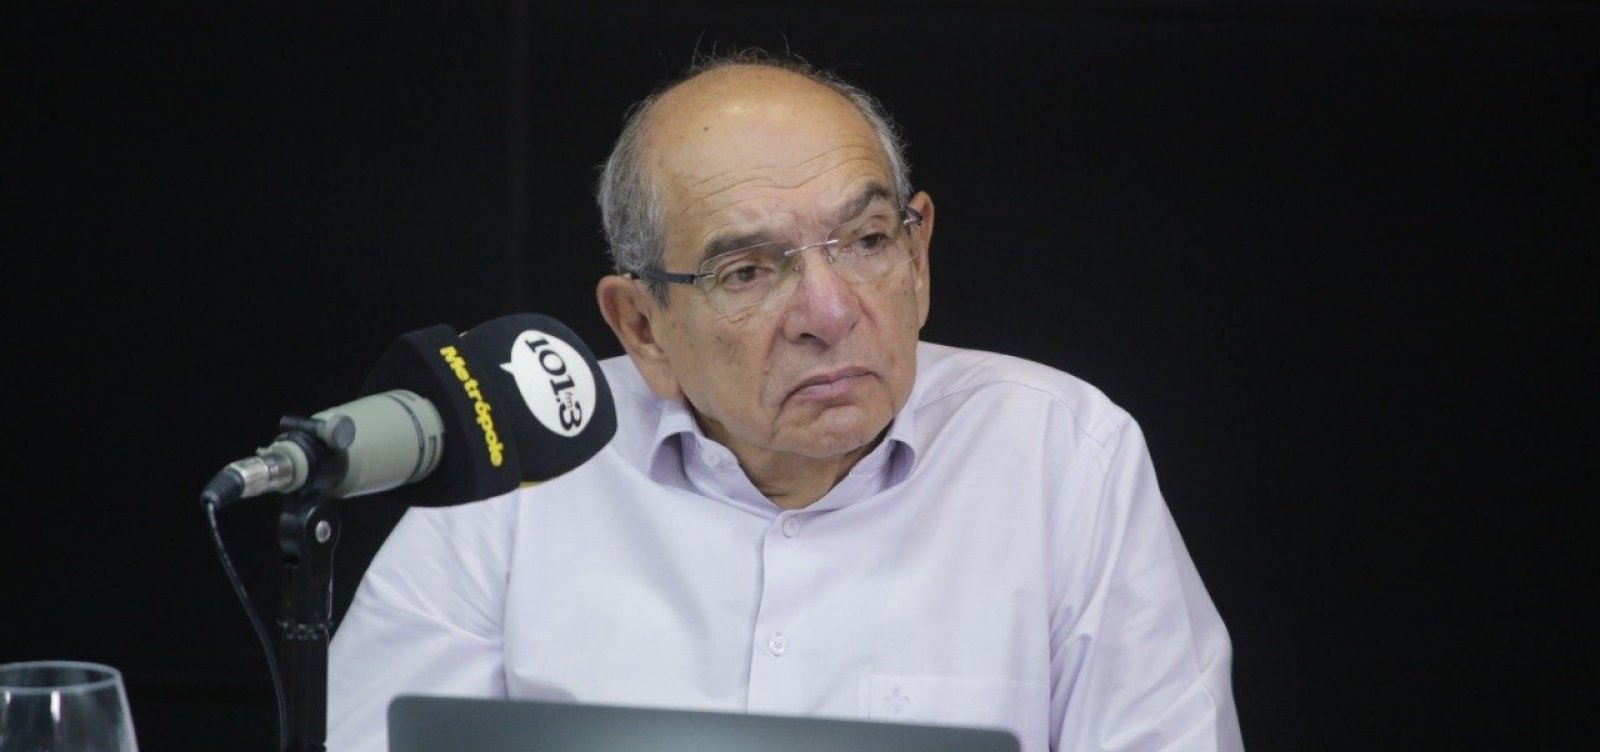 MK questiona 'direito' do governo Bolsonaro de 'espionar' população; ouça